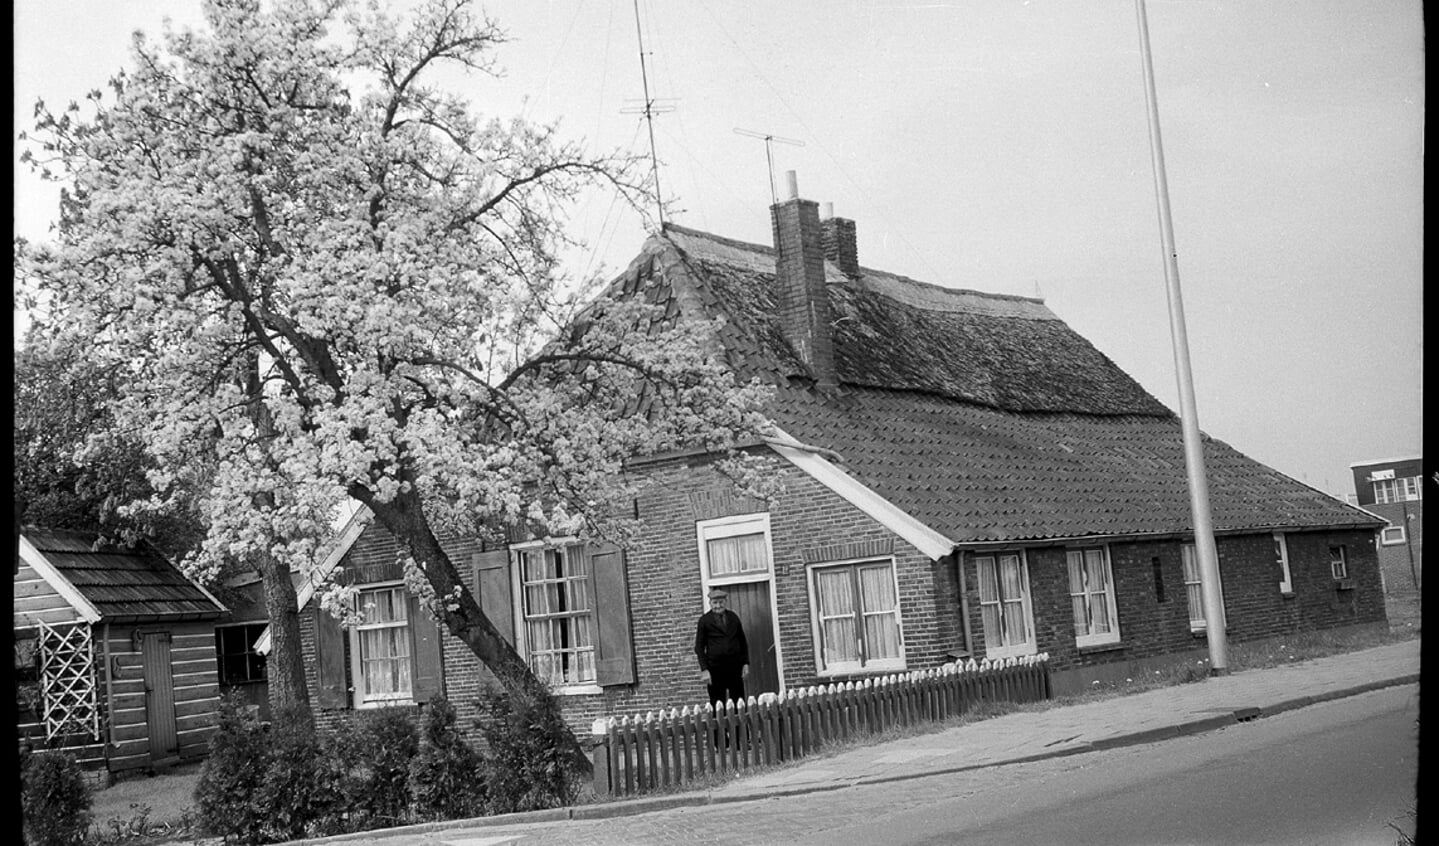 De boerderij in de lente van 1975 met de kersenboom in bloei prachtig plaatje.